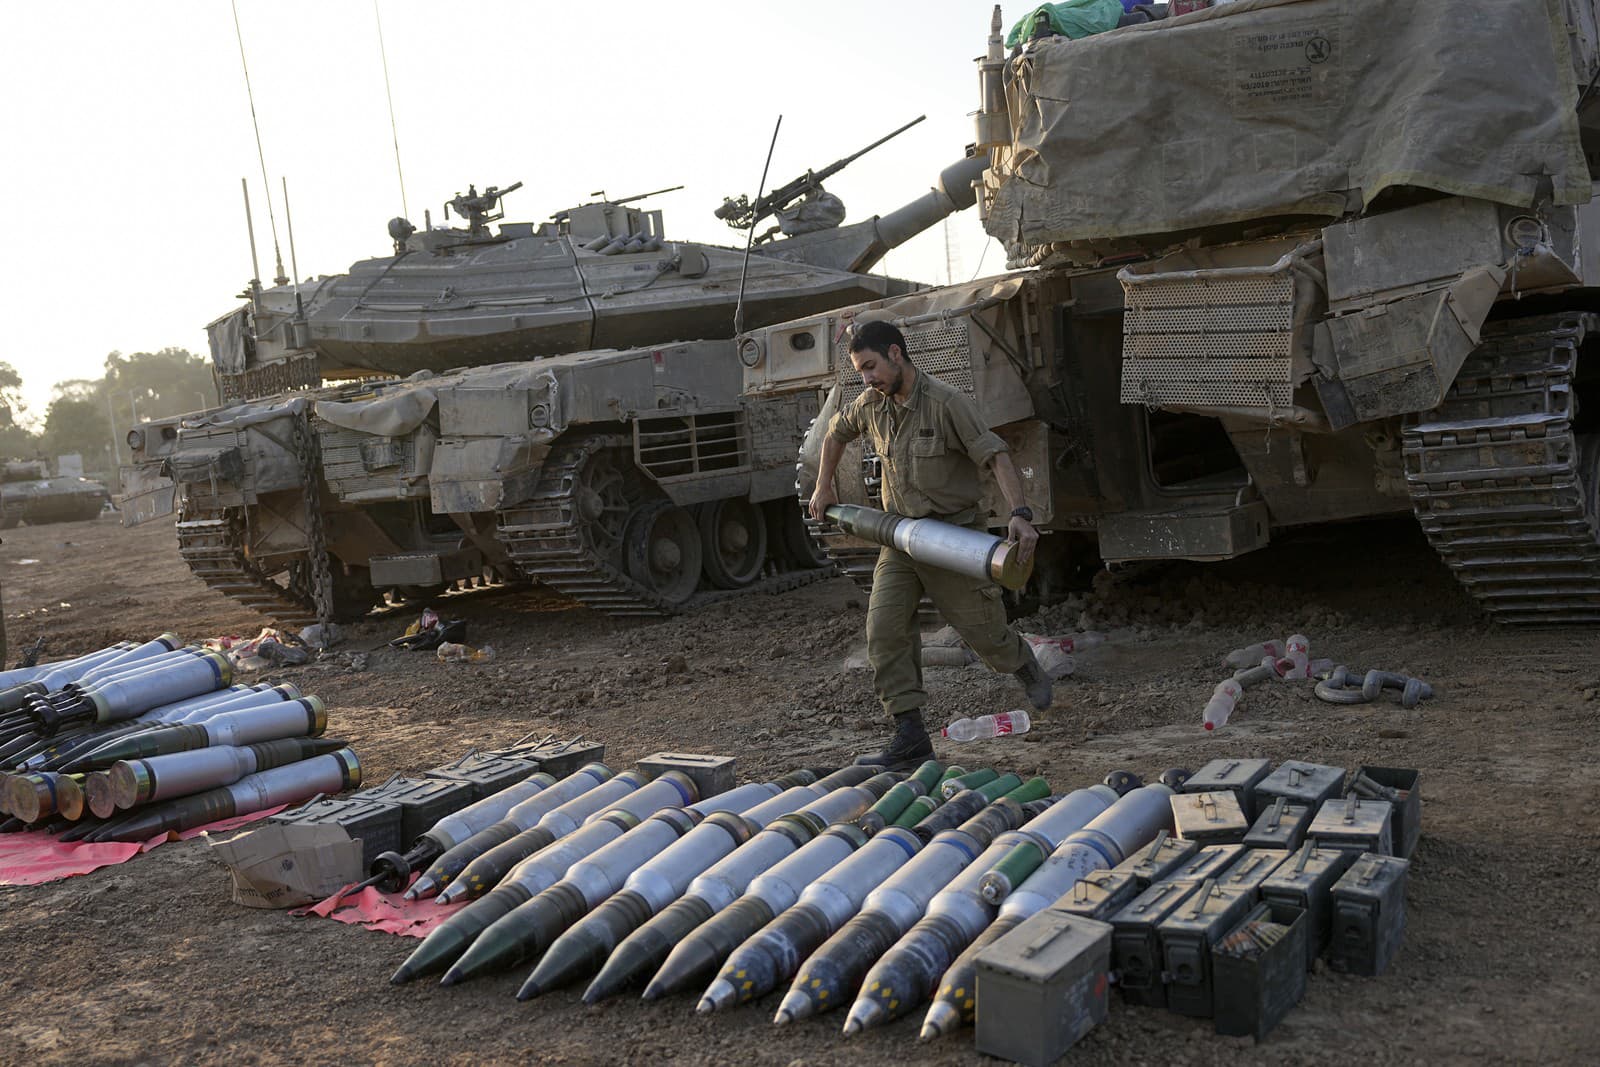 Izraelskí vojaci nakladajú granáty do tanku v odstavnej oblasti v južnom Izraeli pri hraniciach s Gazou